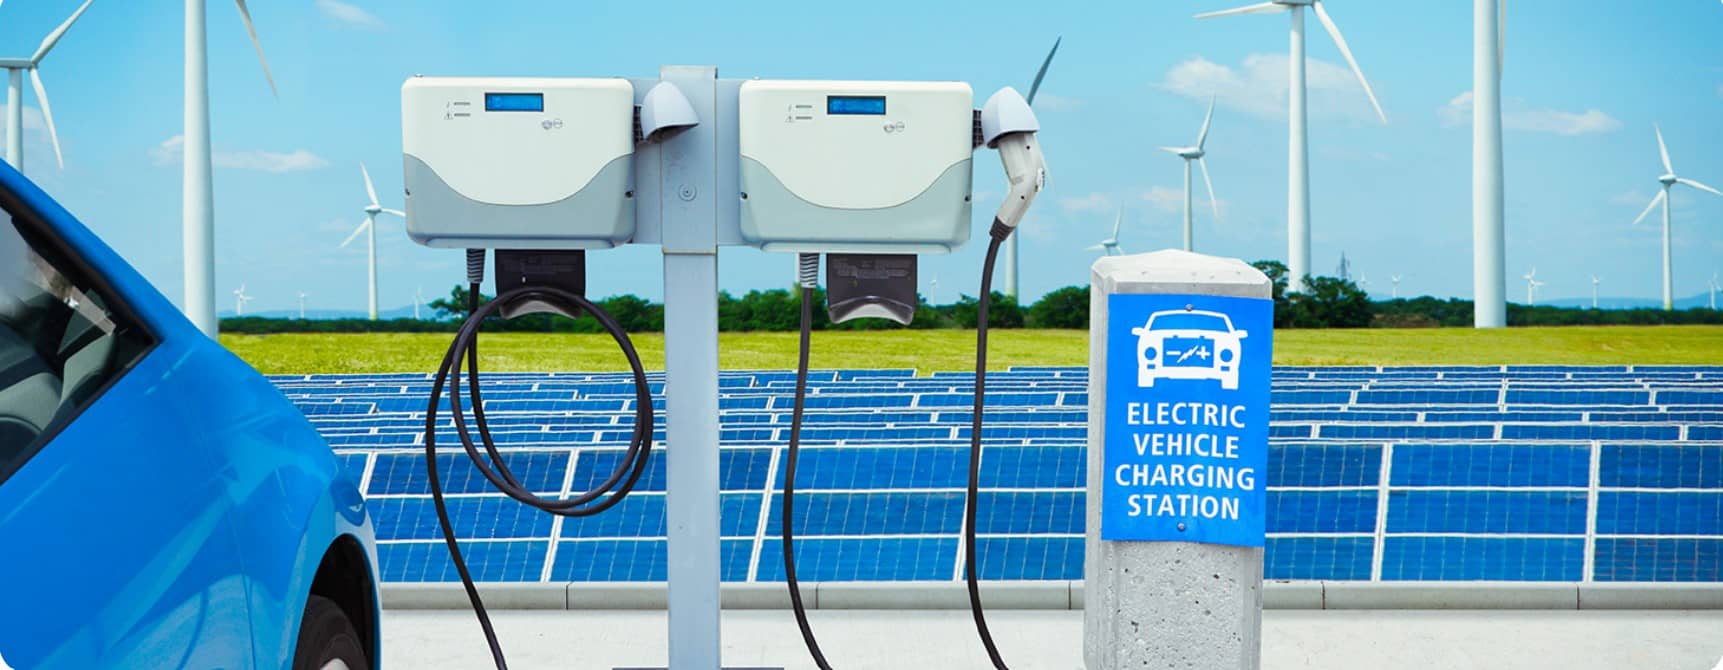 Energiezukunft 2021 - Infrastruktur für die E-Mobilität | Screenshot 2021 04 12 130940